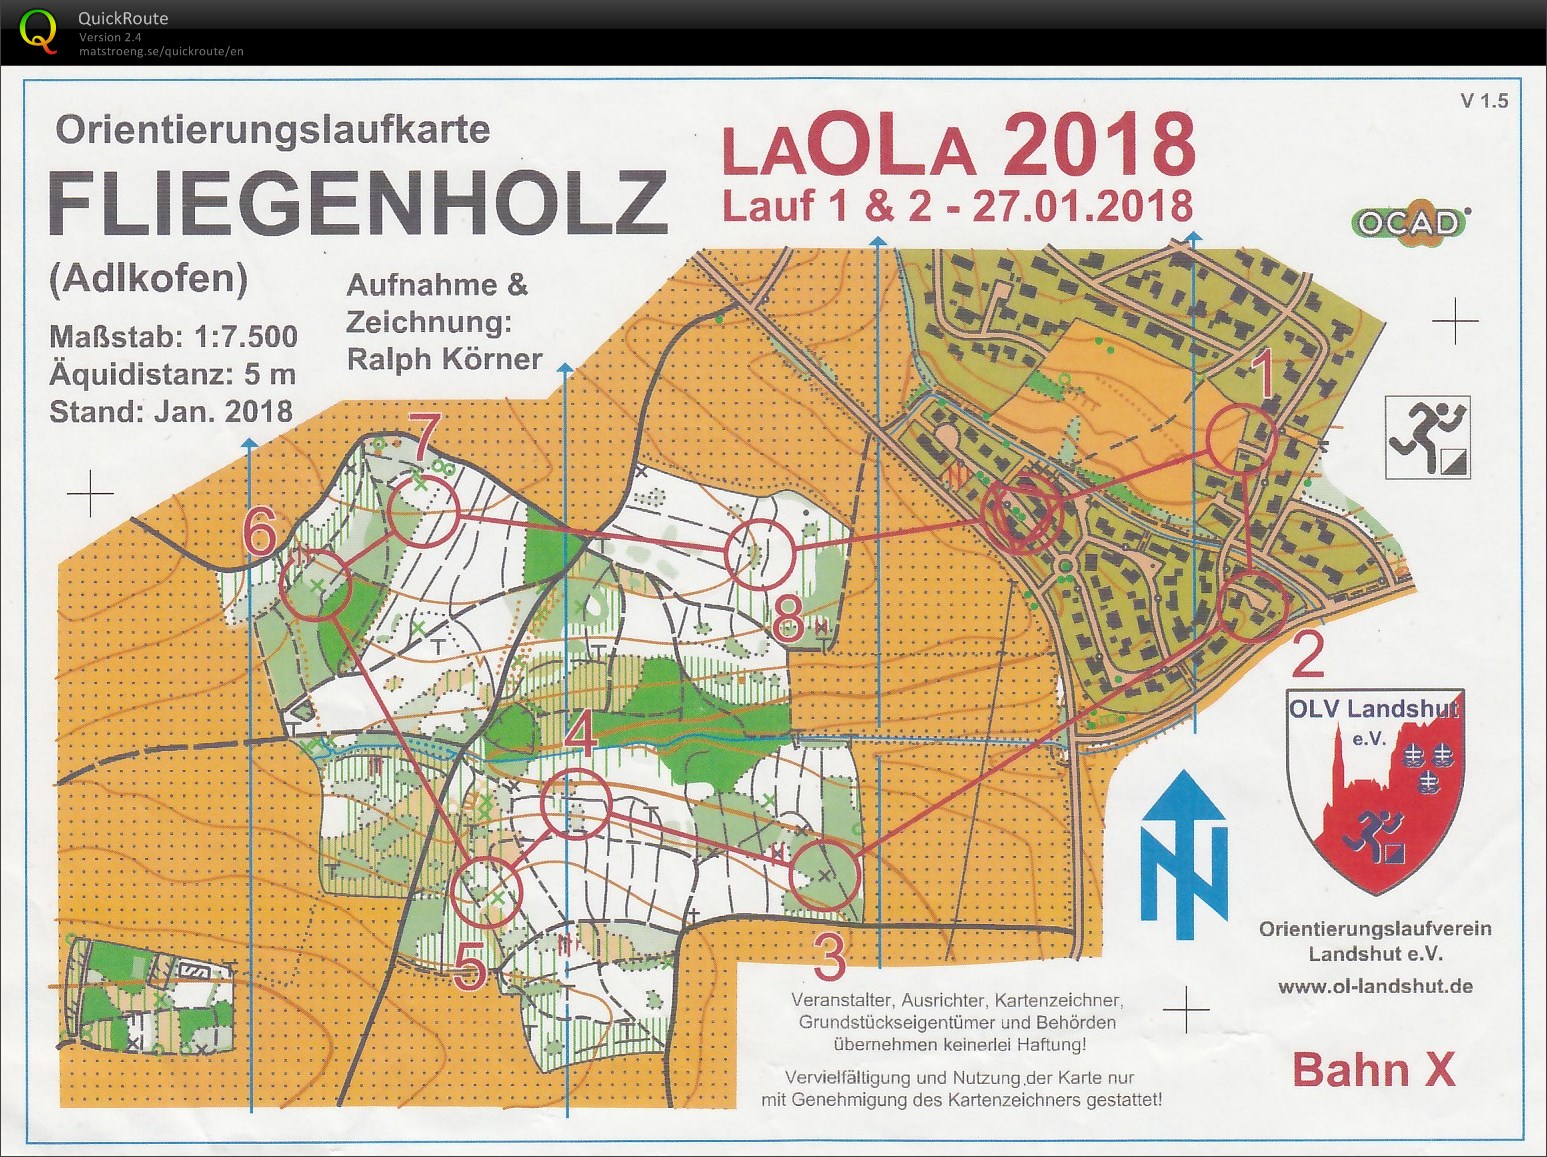 LaOLA 2018 Lauf 2 (27.01.2018)